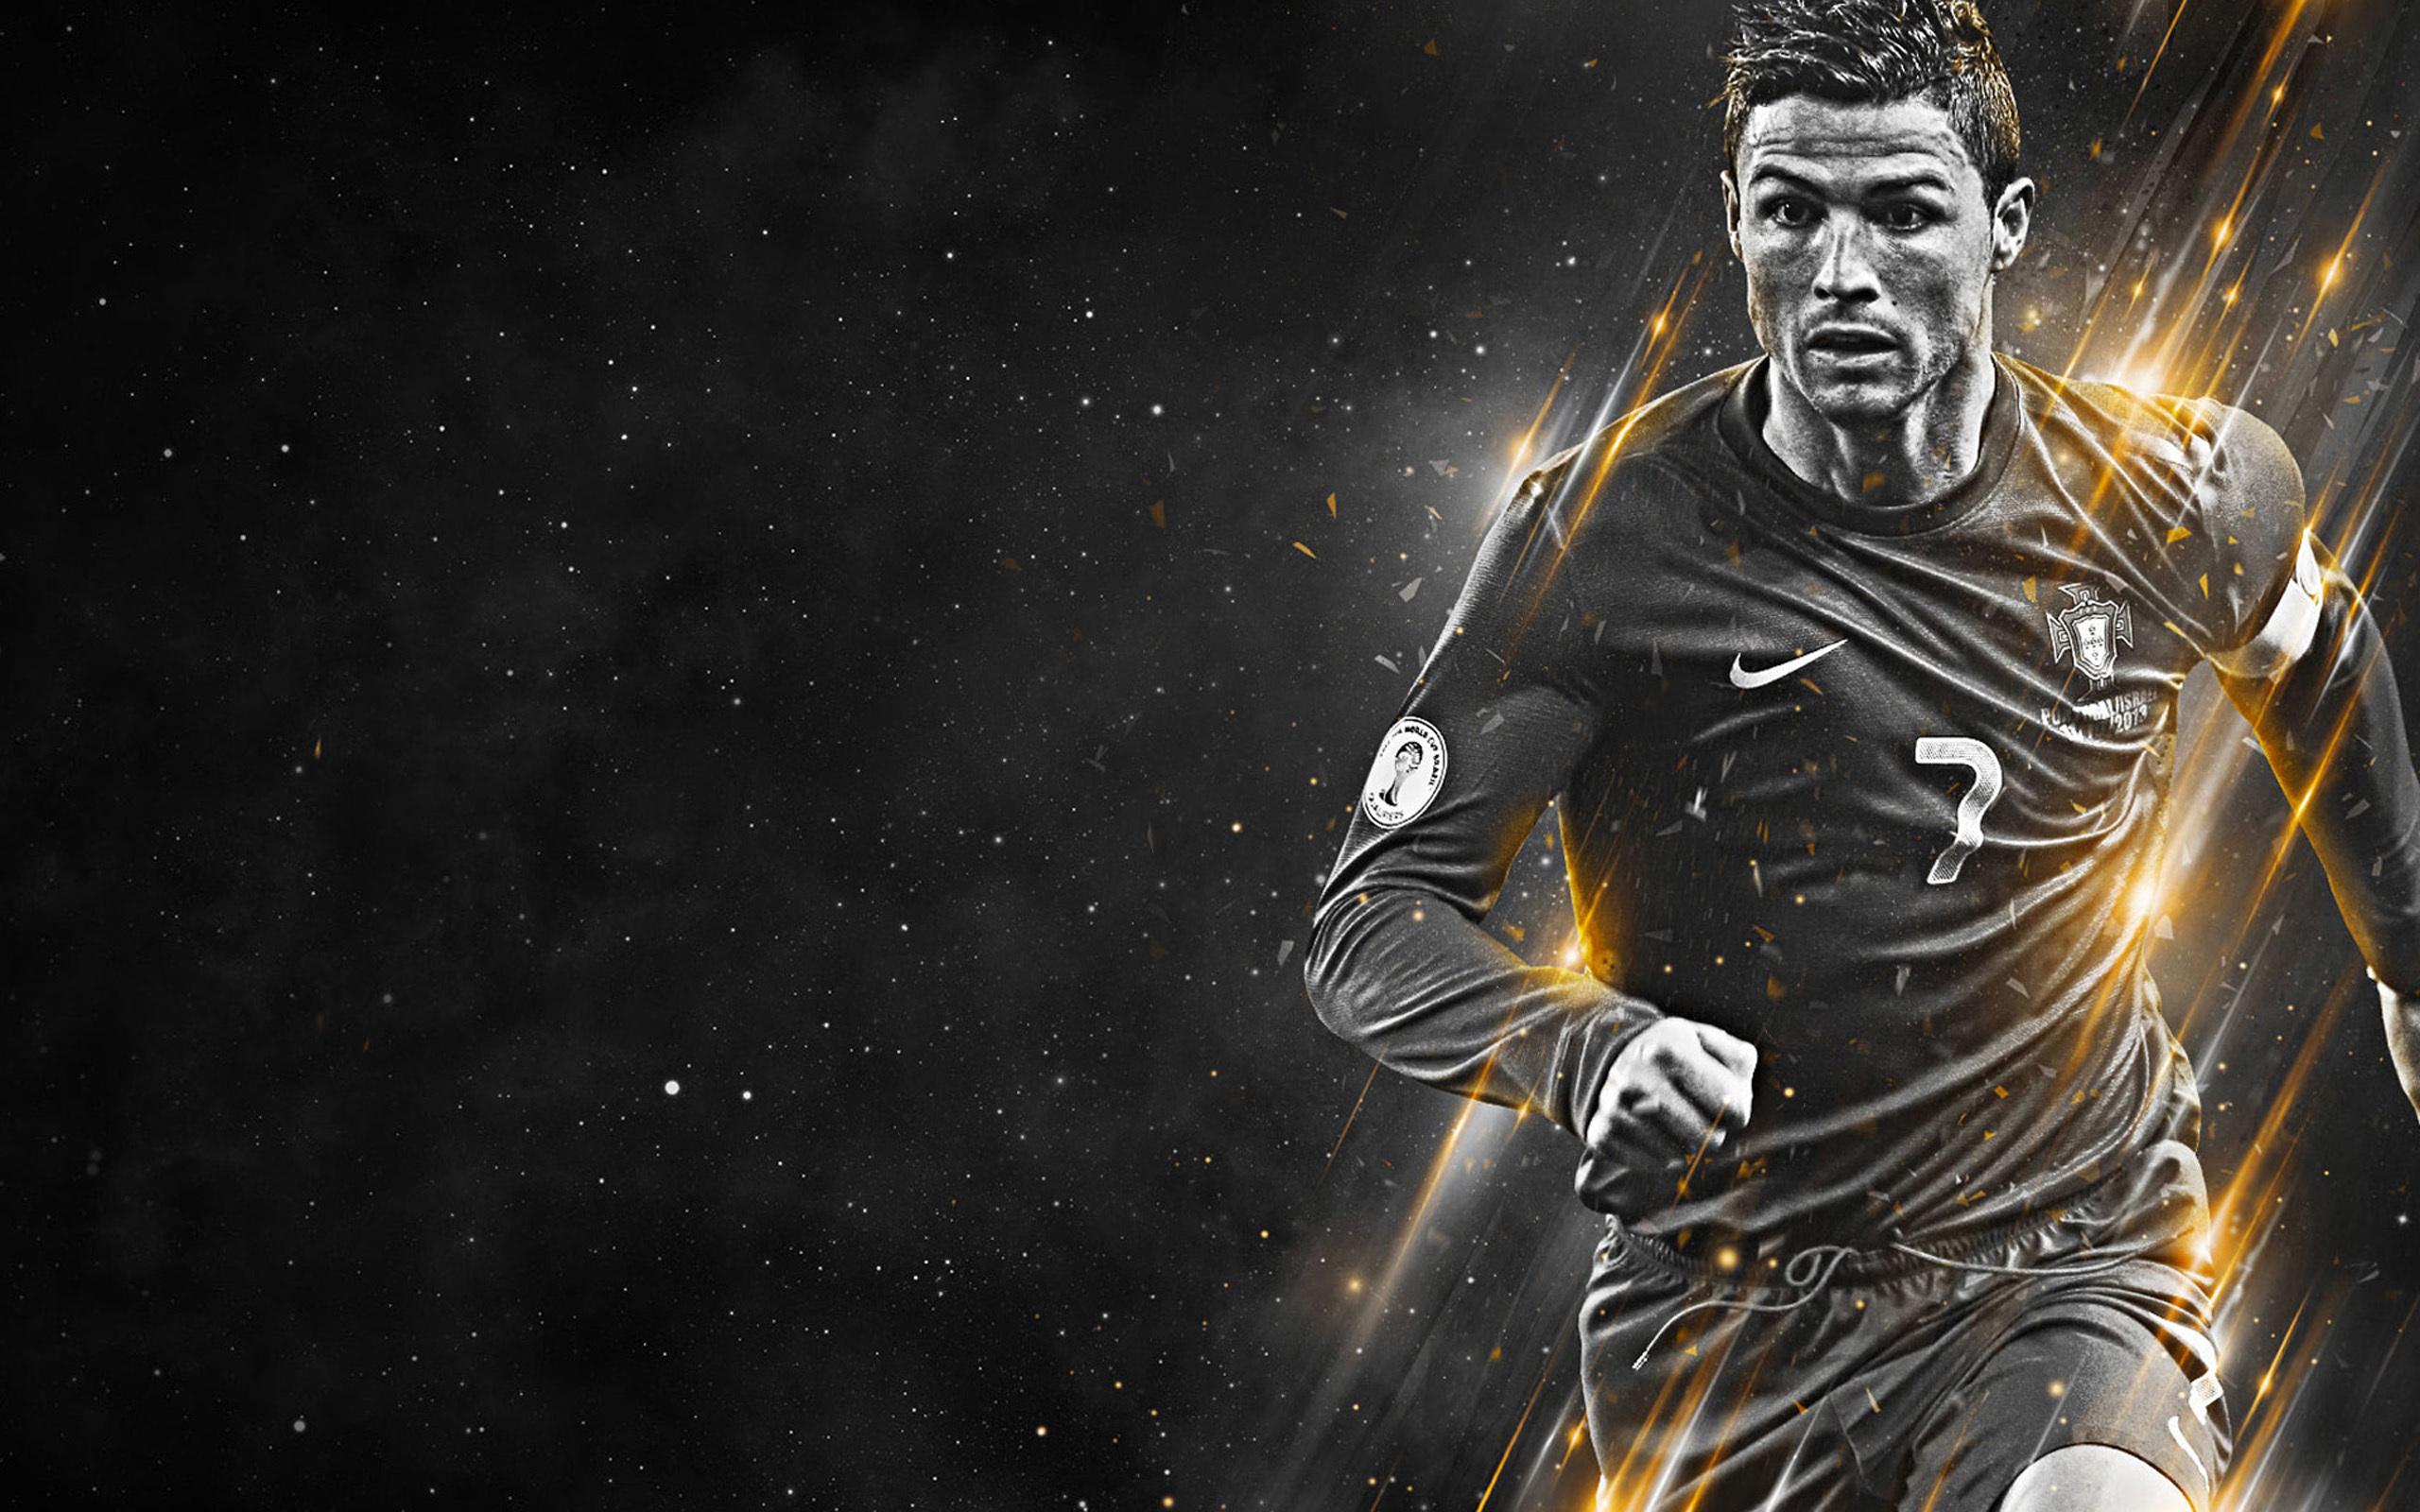 Cùng trang trí cho màn hình của bạn với những hình nền Cristiano Ronaldo 3D vô cùng chất lượng và sống động. Mỗi lần mở máy, bạn cảm thấy như được sống trong không gian của ngôi sao bóng đá này.